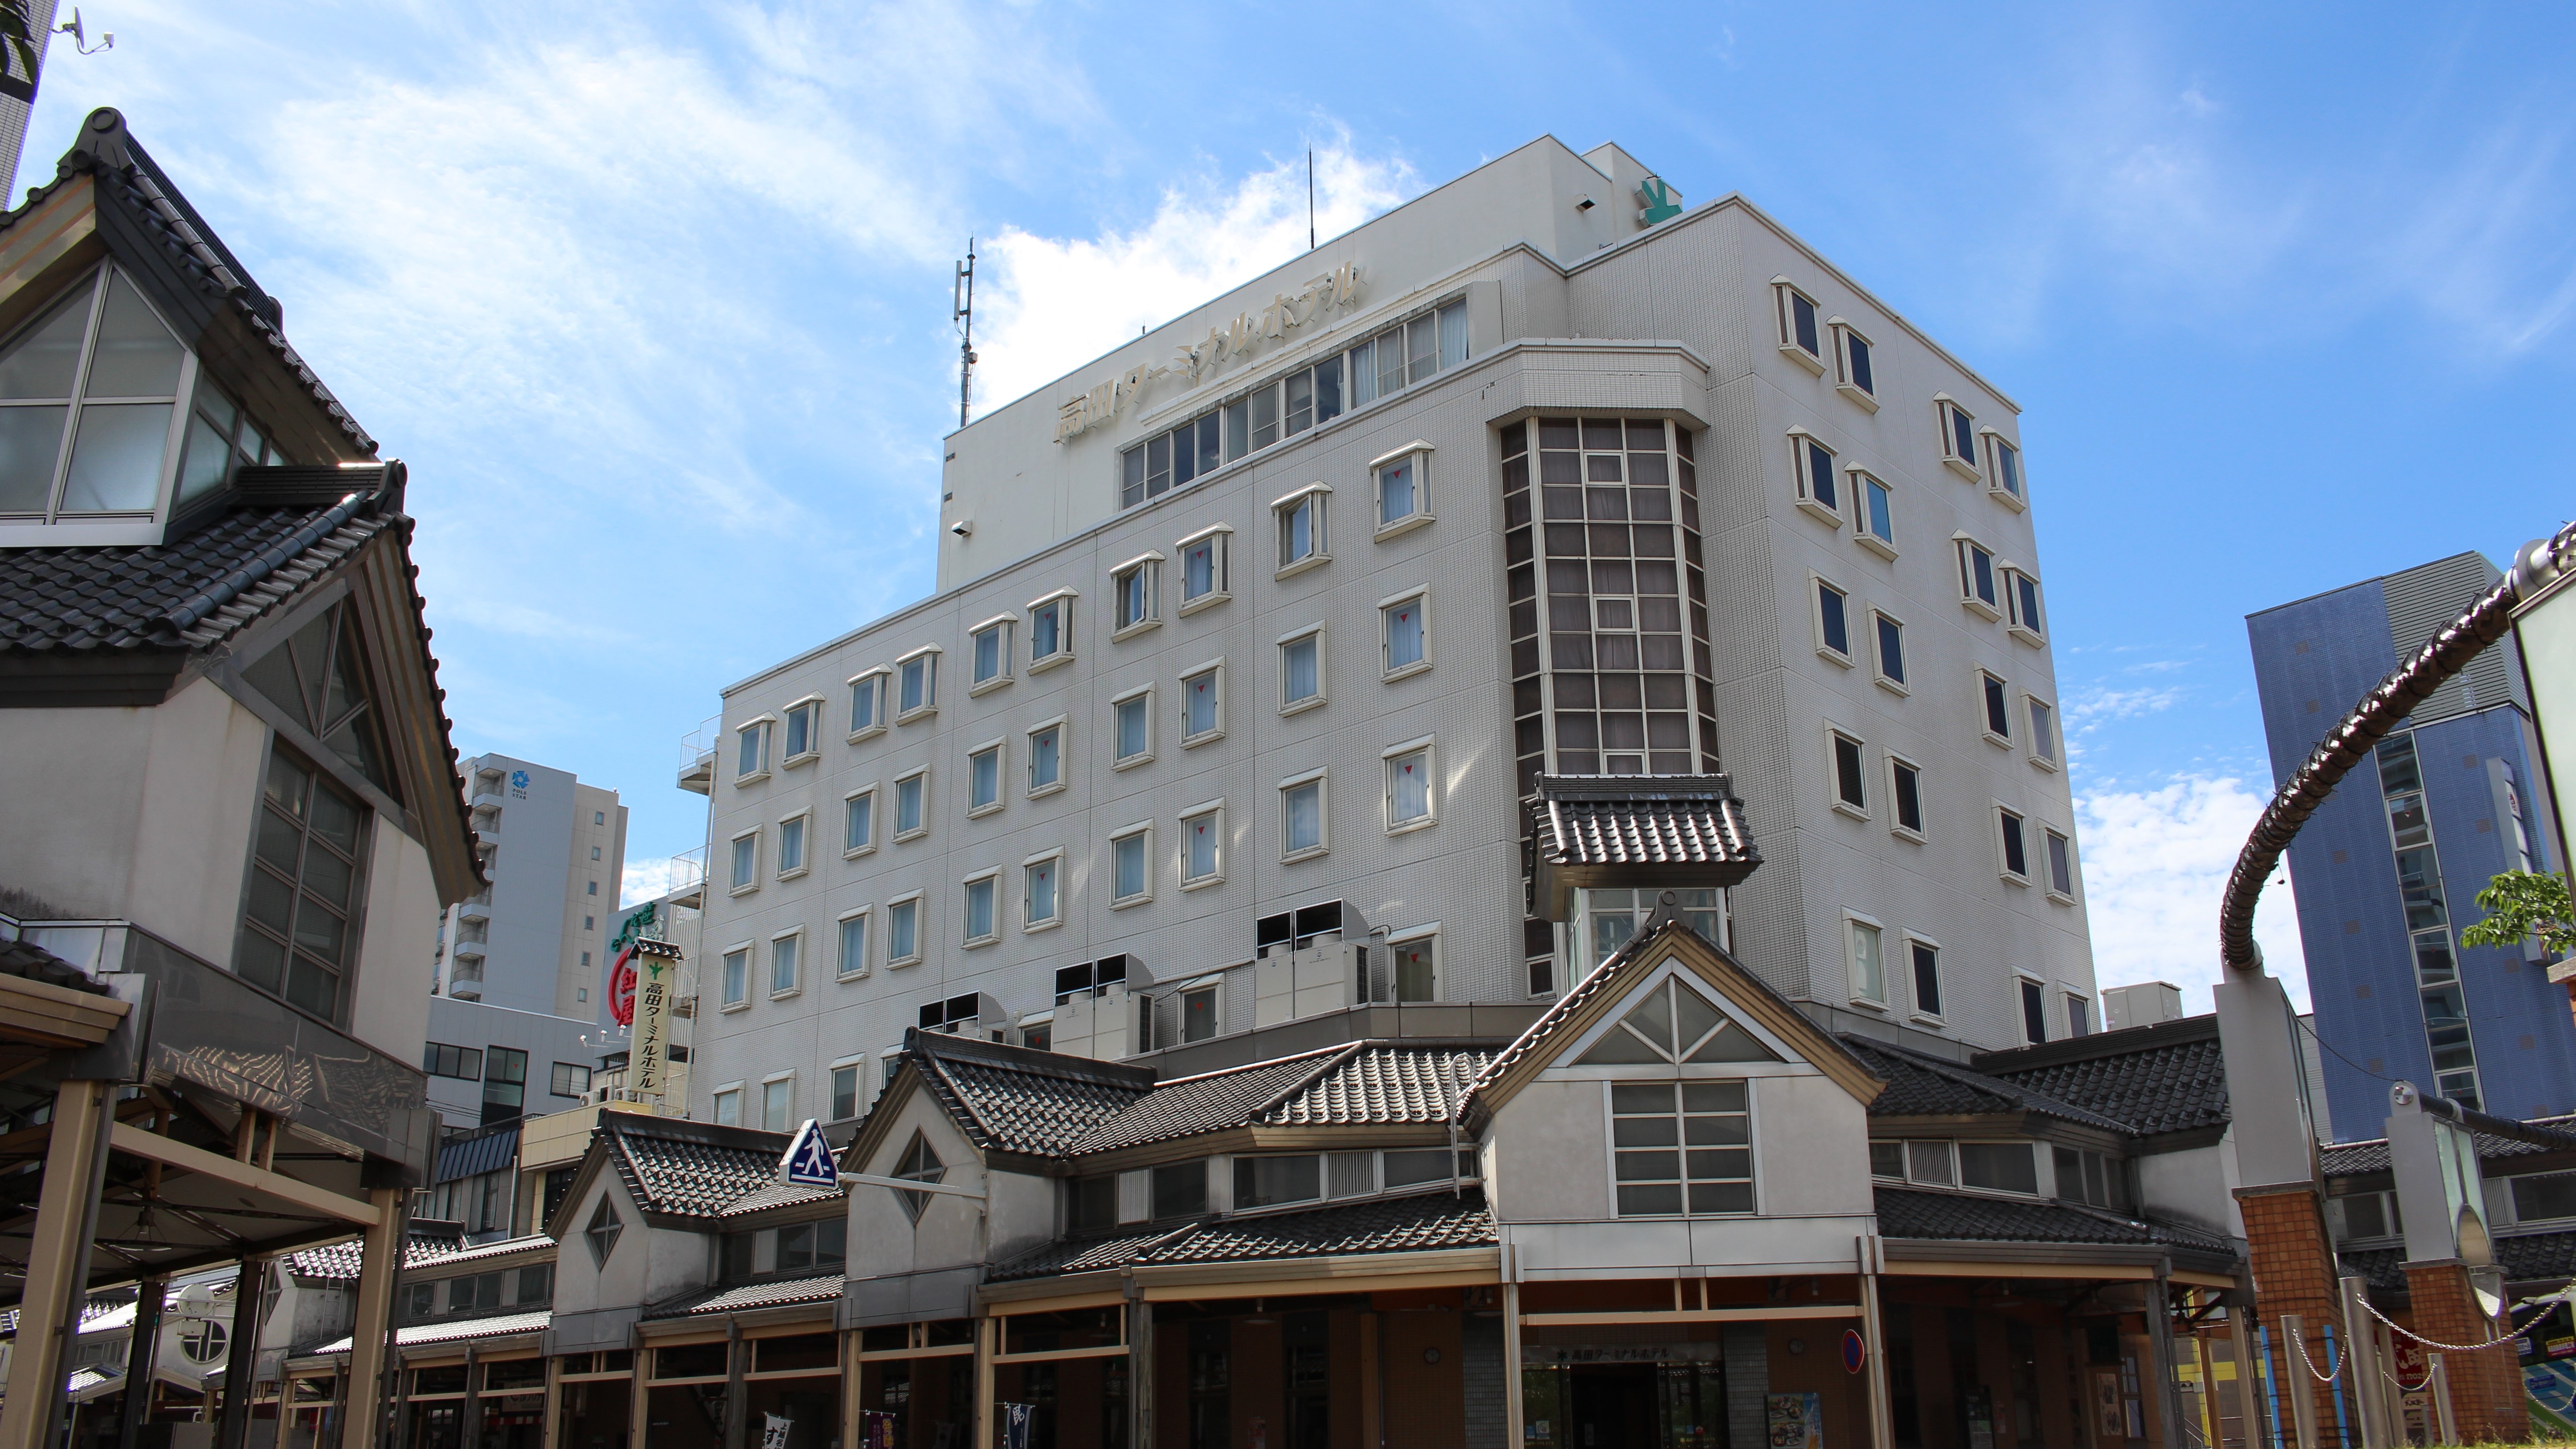 「天地人」の舞台になった春日山城と鮫ケ尾城の観光におすすめの格安ホテル